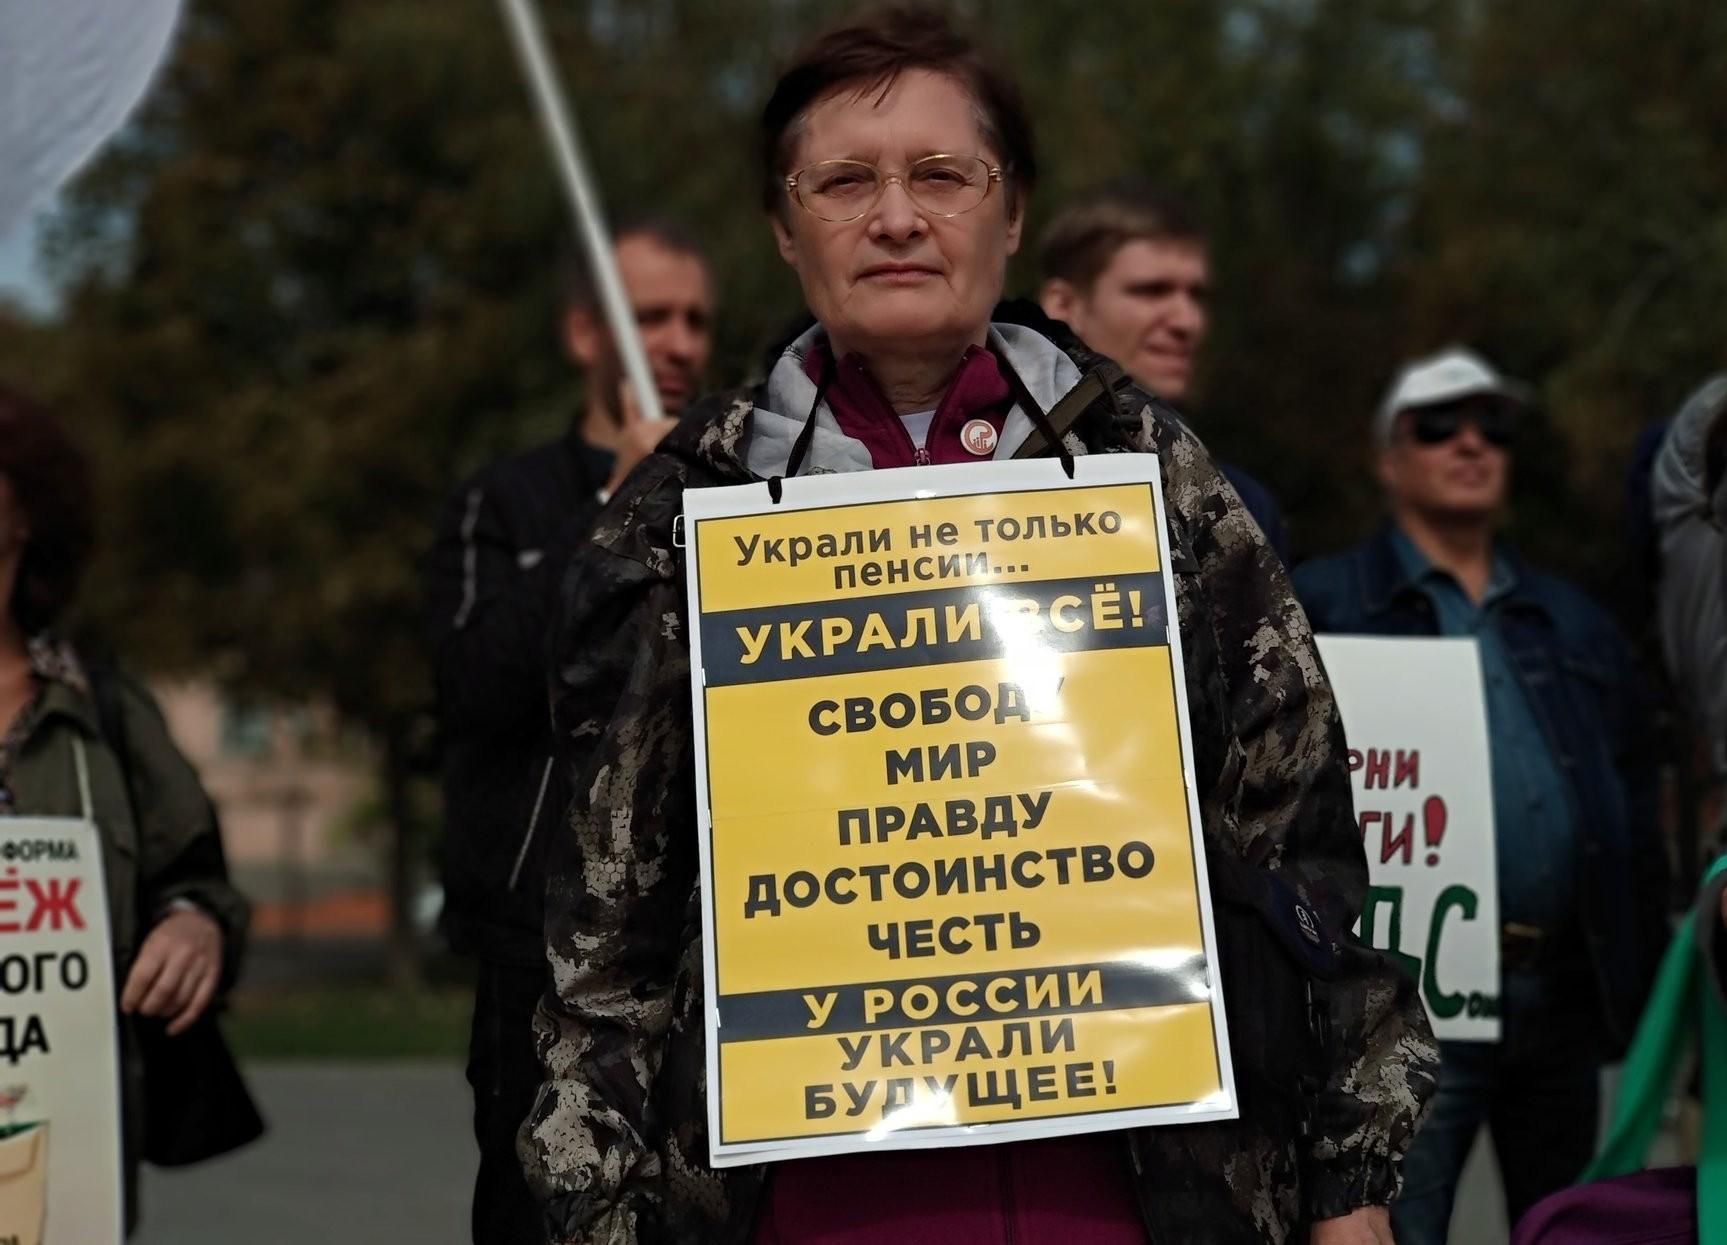 "Украли свободу, мир и правду": появились фото новых митингов против пенсионной реформы в России